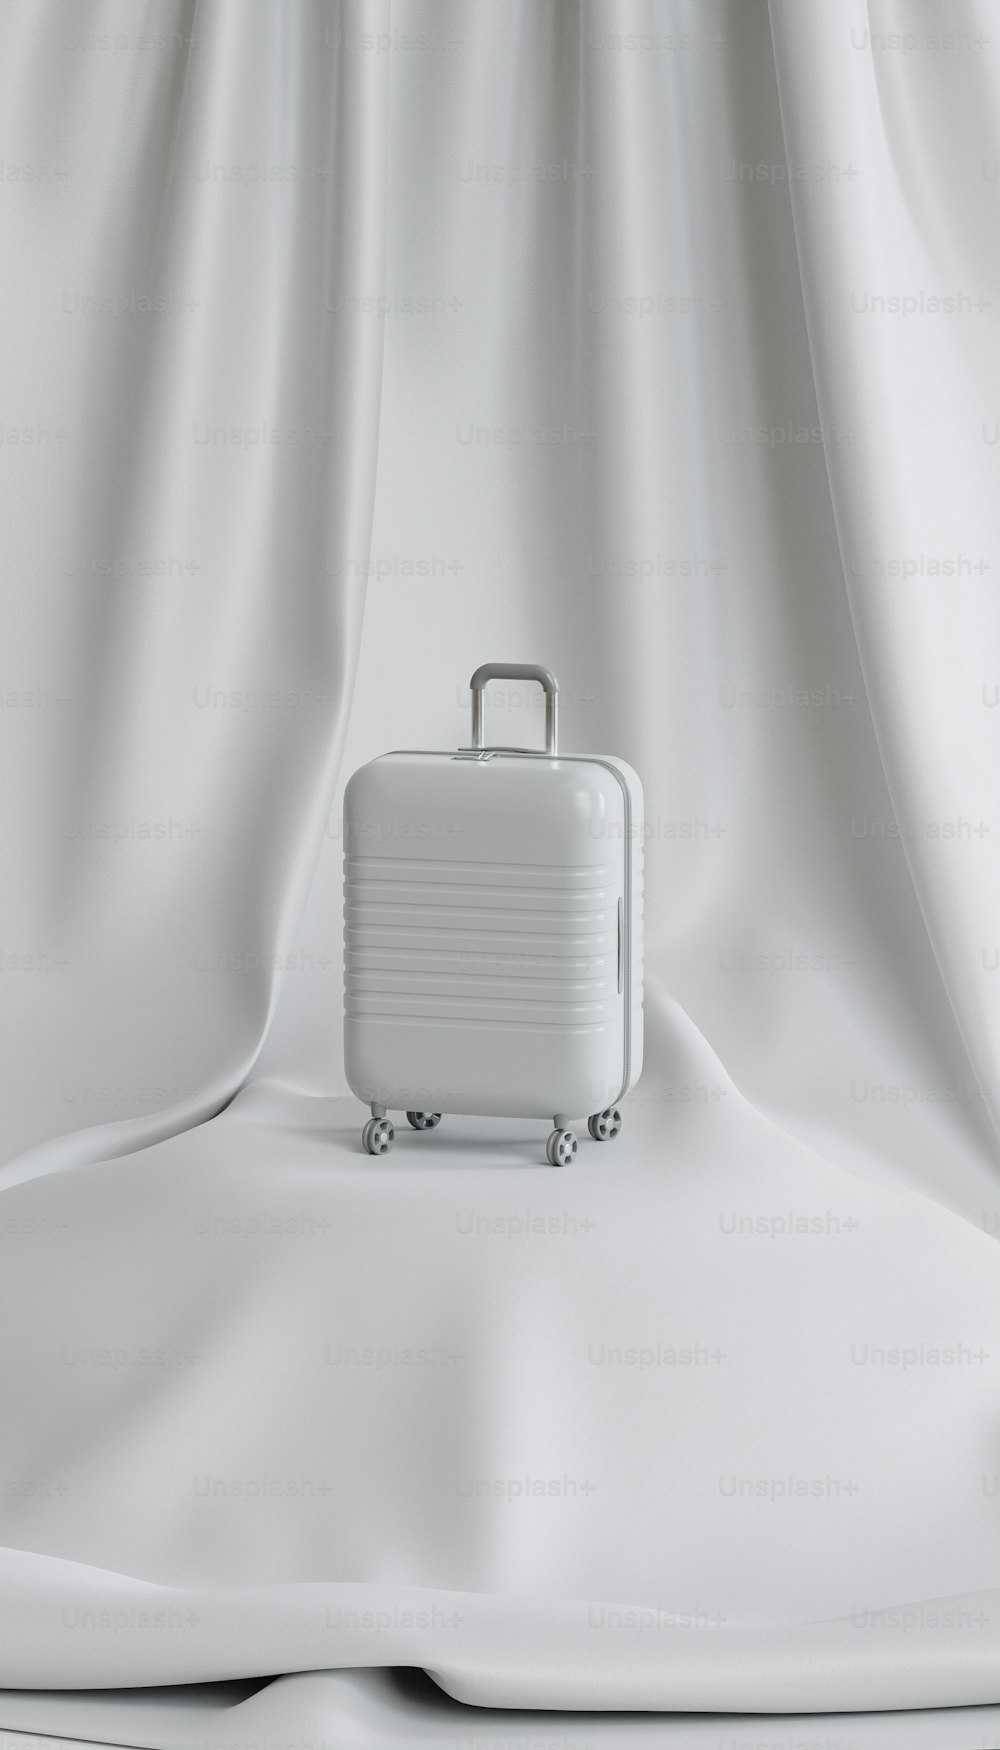 하얀 시트 위에 앉아있는 흰색 여행 가방